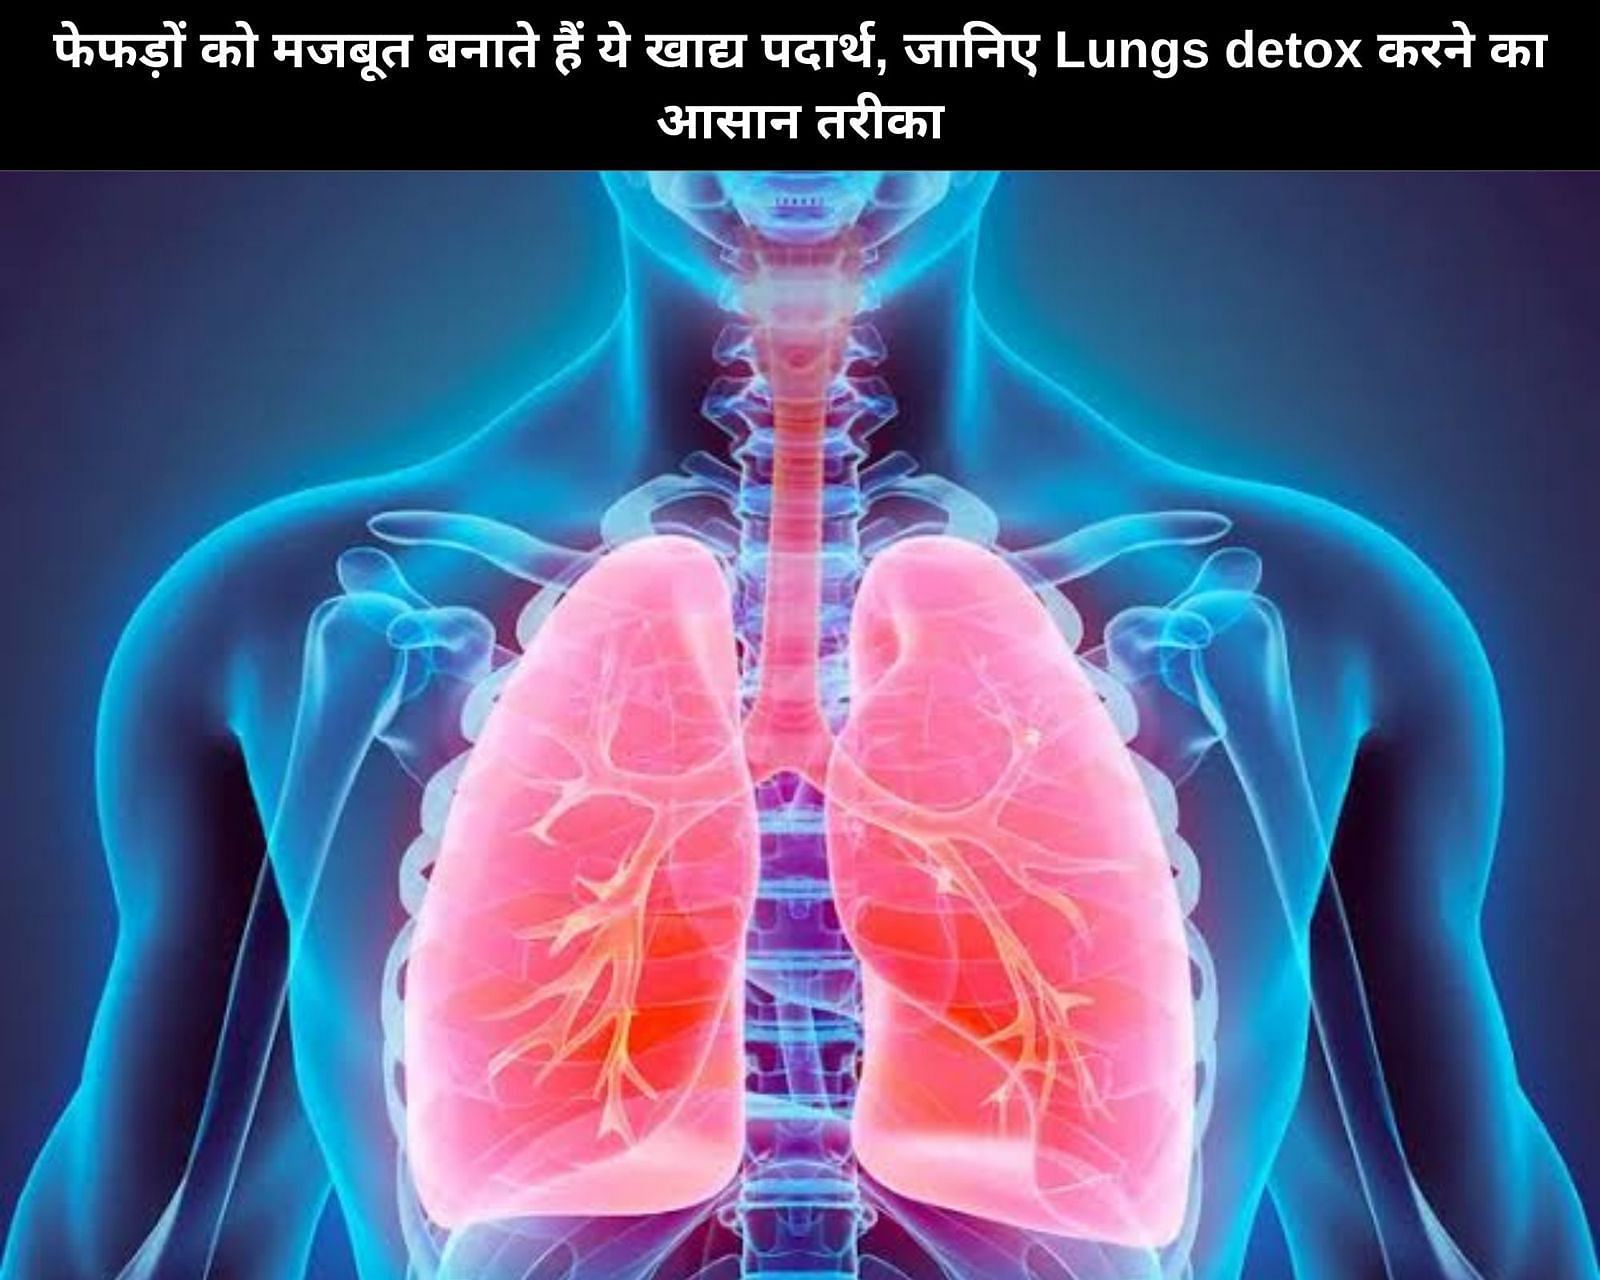 फेफड़ों को मजबूत बनाते हैं ये खाद्य पदार्थ, जानिए Lungs detox करने का आसान तरीका (फोटो - sportskeedaहिन्दी)